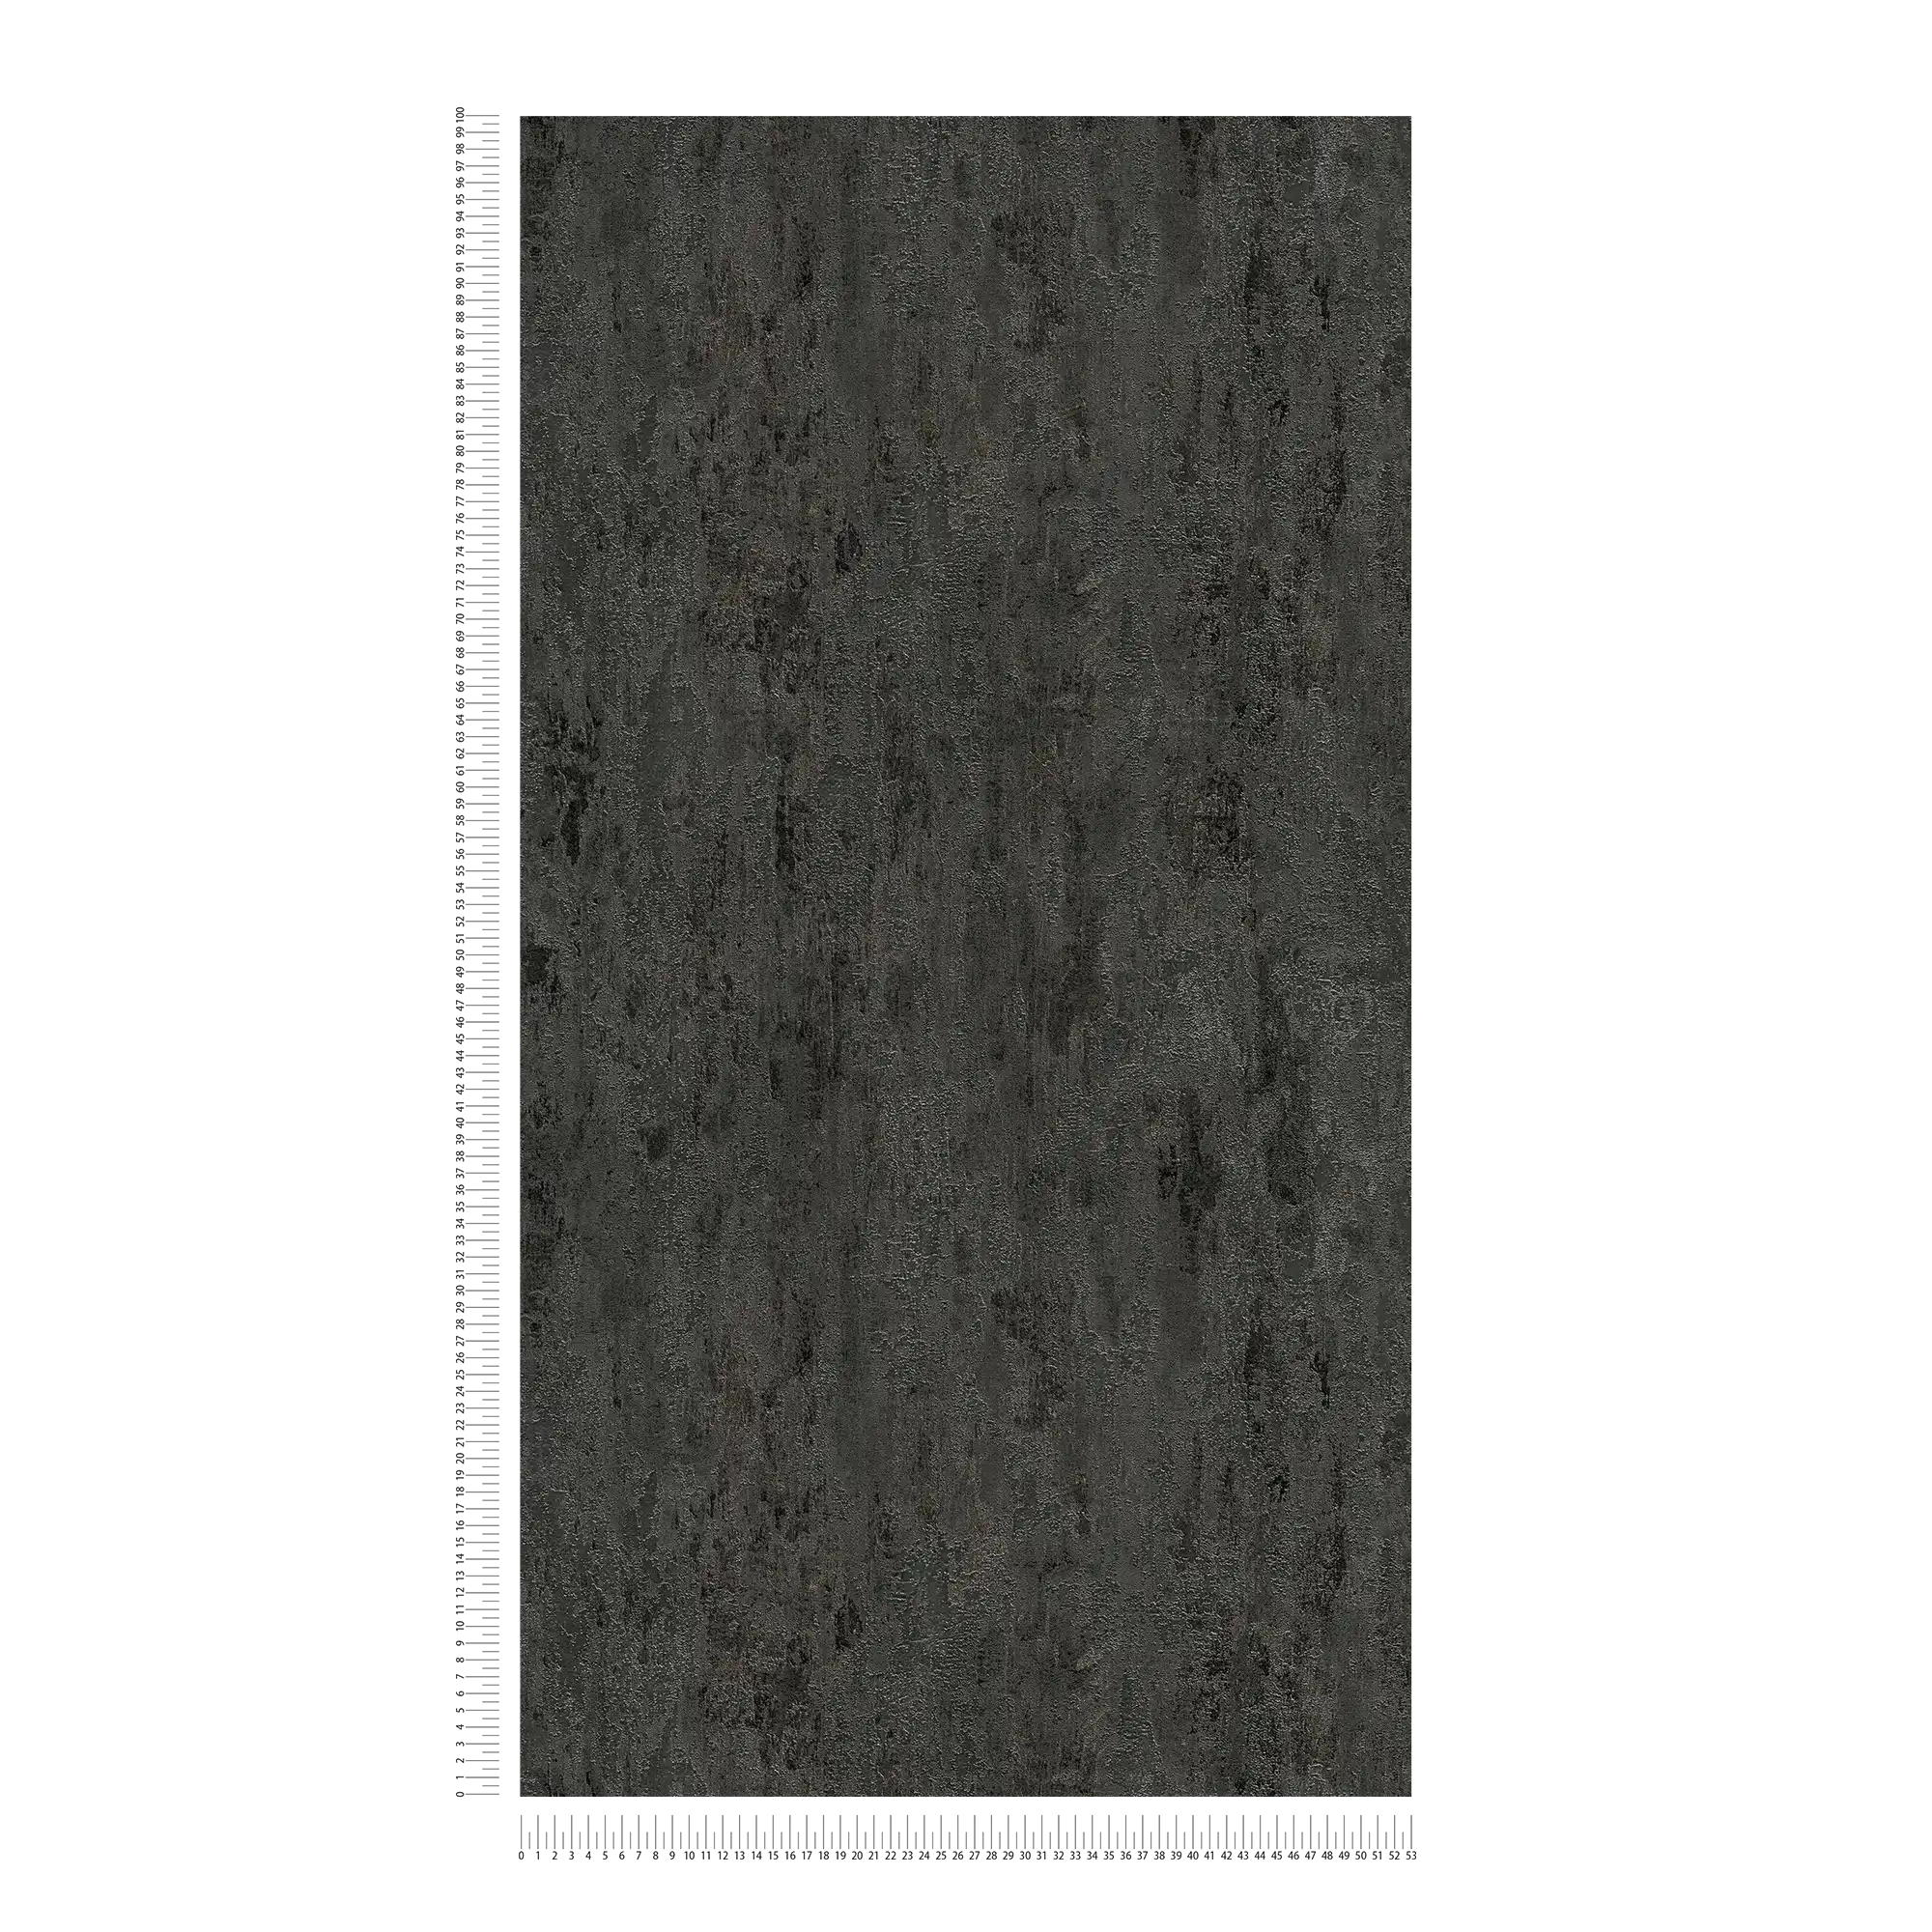             Carta da parati rustica testurizzata effetto metallo antracite - nero, argento, grigio
        